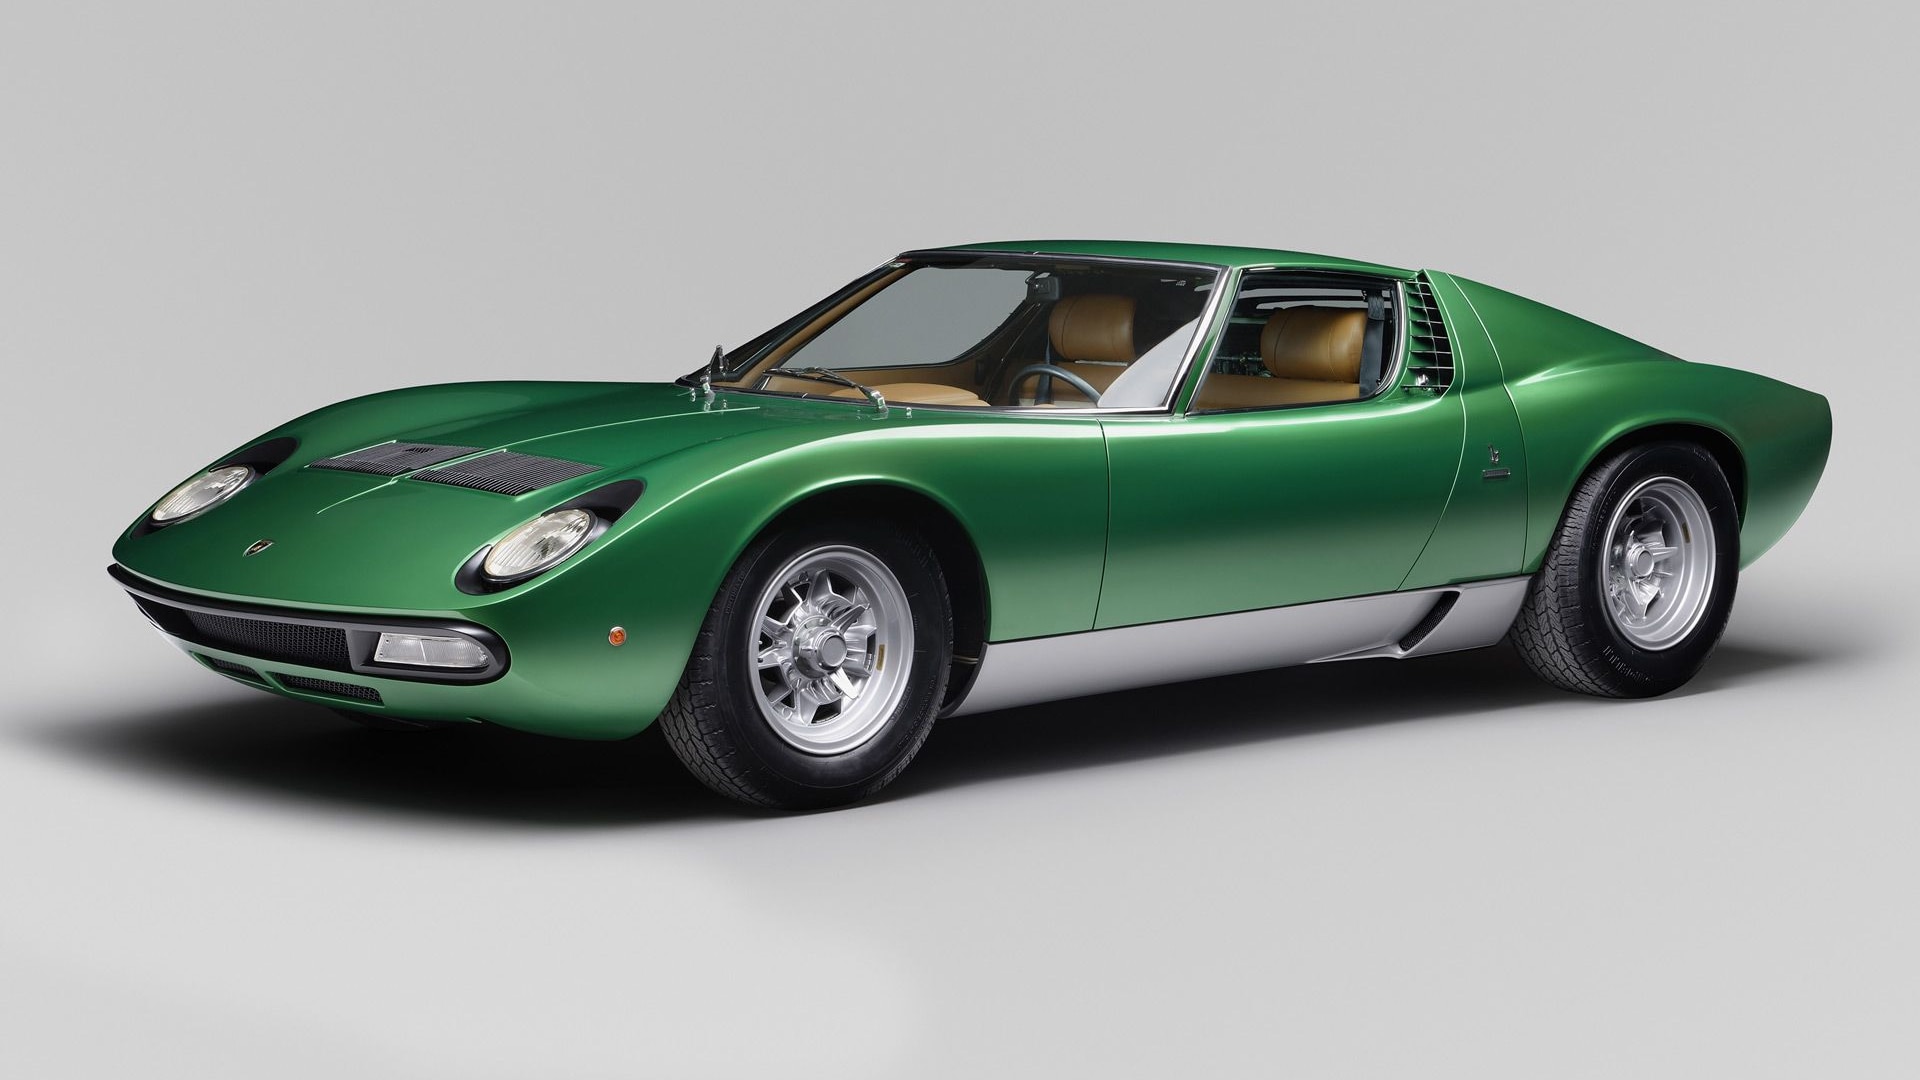 1971 Lamborghini Miura SV pre-production restored by Polo Storico